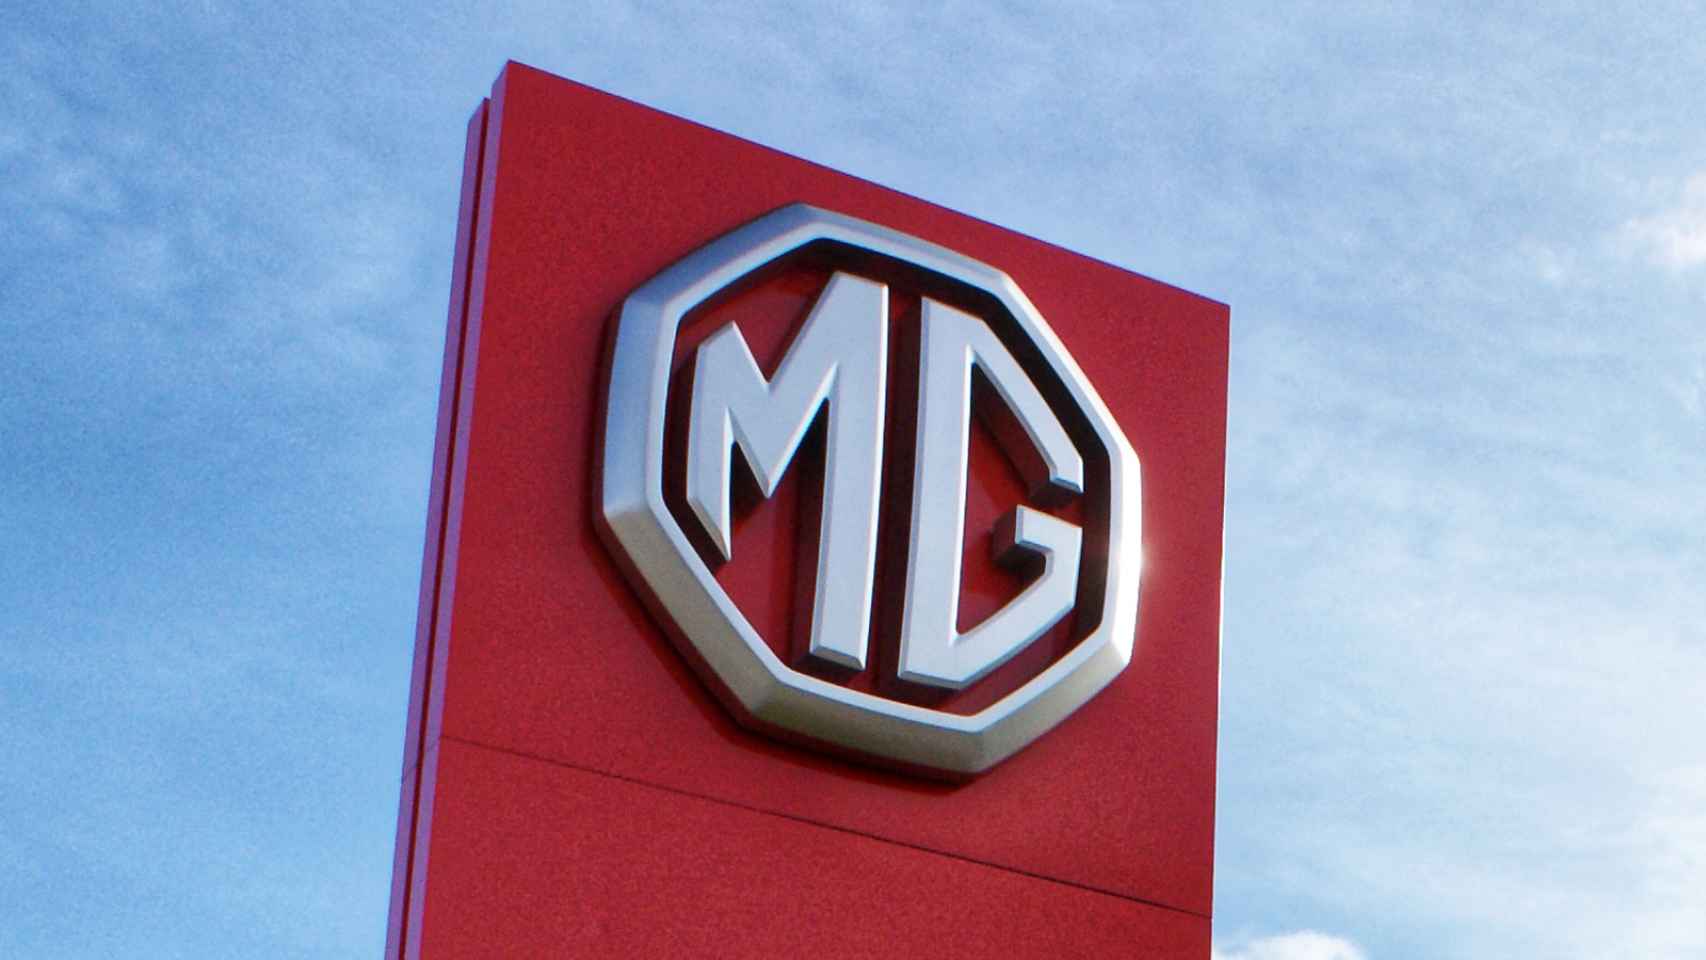 MG cuenta con el respaldo de SAIC, la primera compañía de China en el automóvil y la séptima en el mundo.